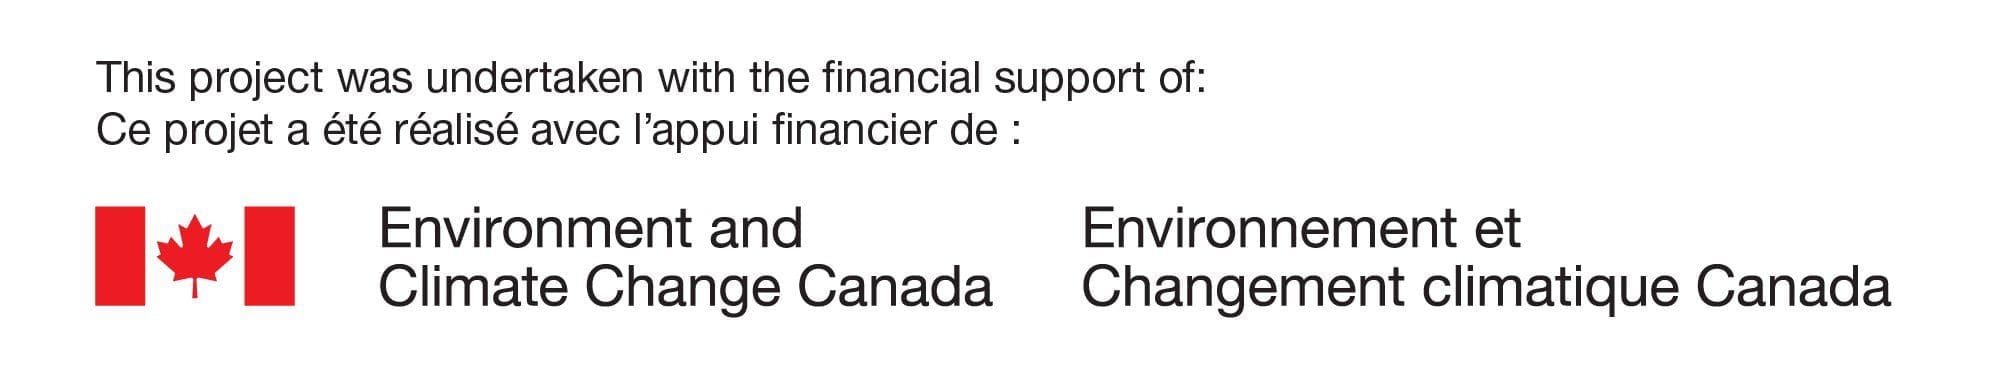 Ce Projet a été réalisé avec l’appui financier de: Environnement et Changement climatique Canada